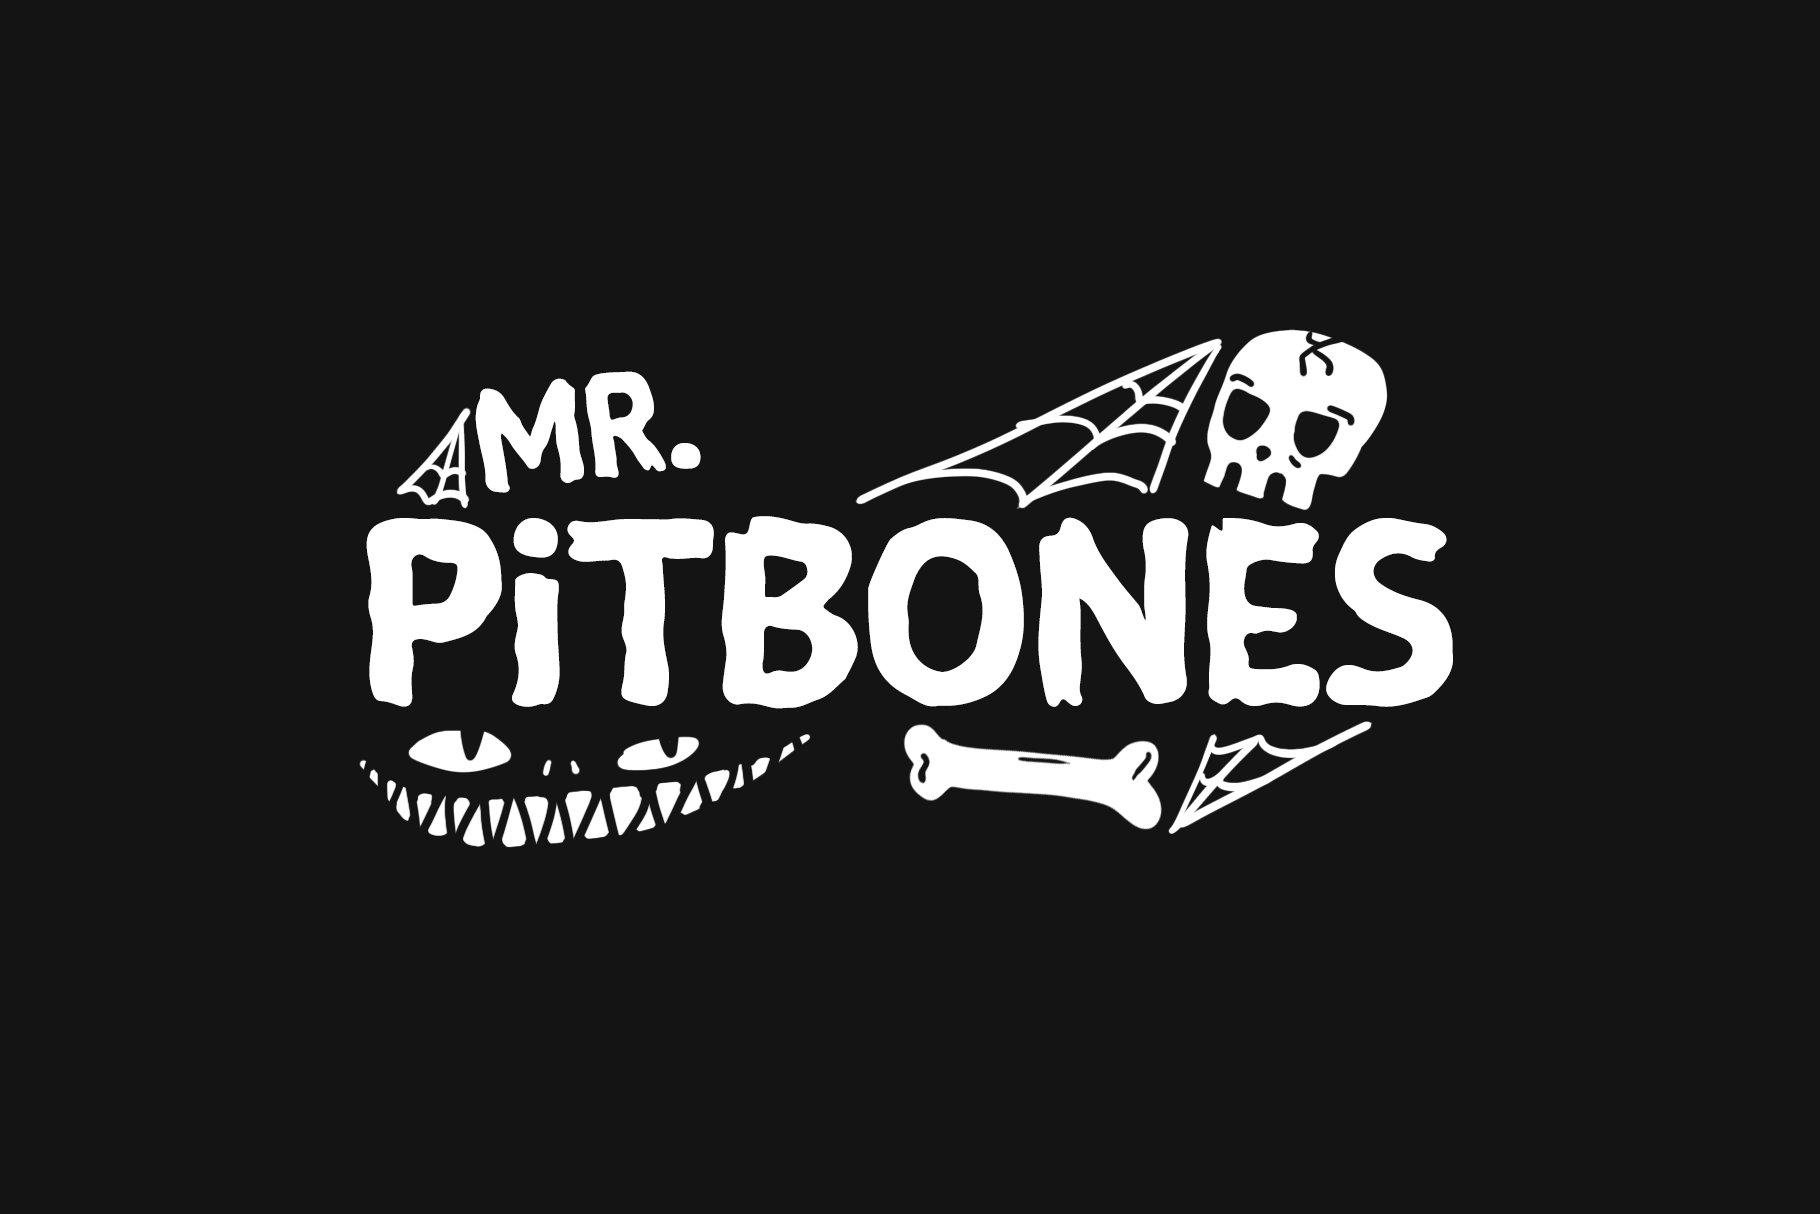 Mr. Pitbones cover image.